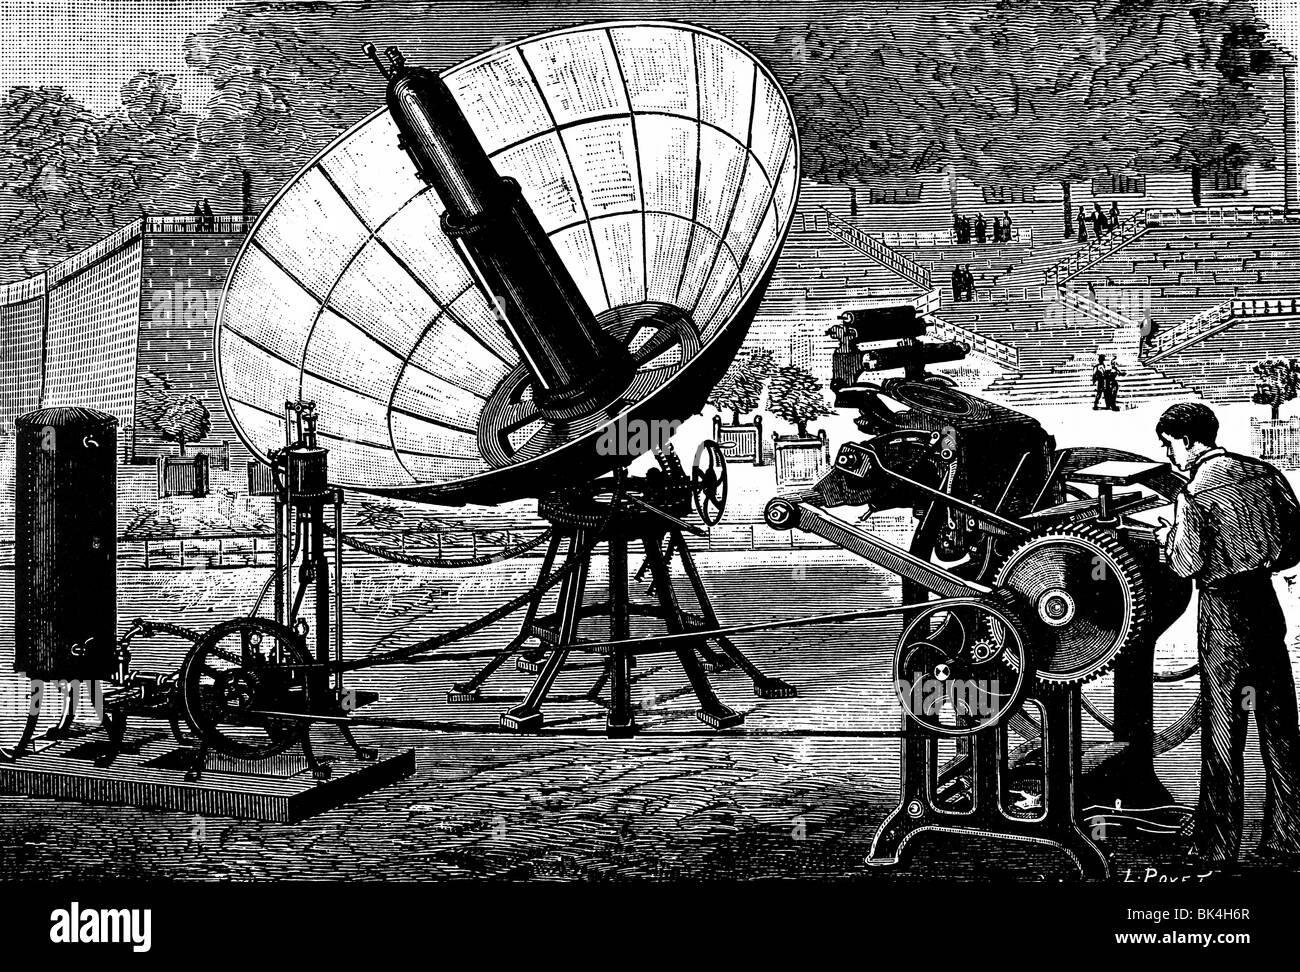 Pifre s Druckmaschine angetrieben durch die Hitze der Sonne s Strahlen, 1882 Stockfoto